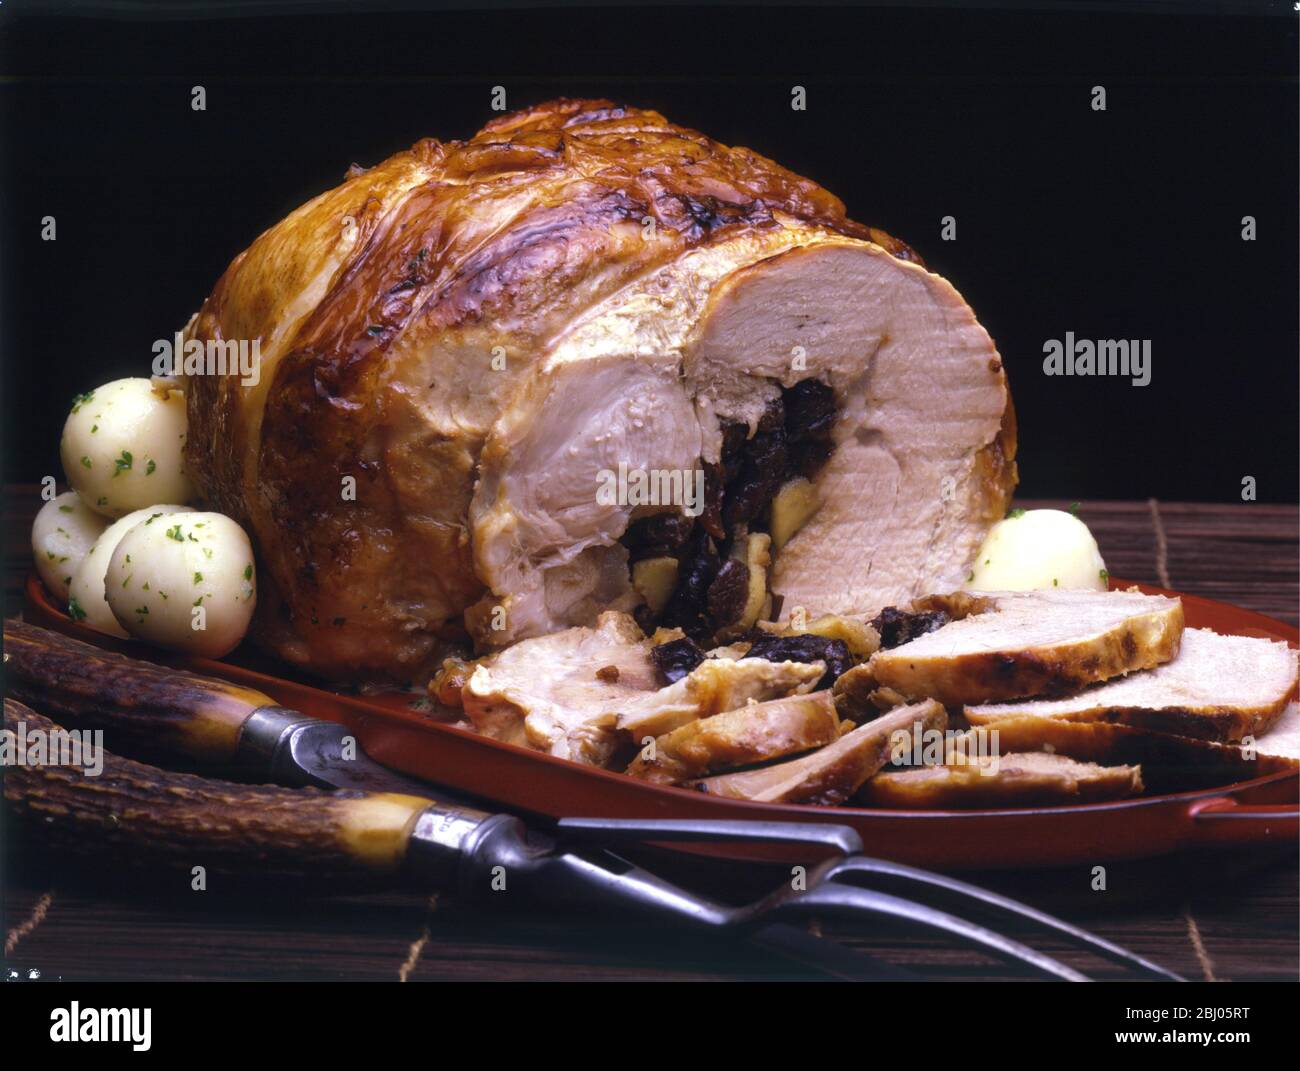 Porc farci au pruneaux - Schweinefleisch mit Pflaumen gefüllt Stockfoto